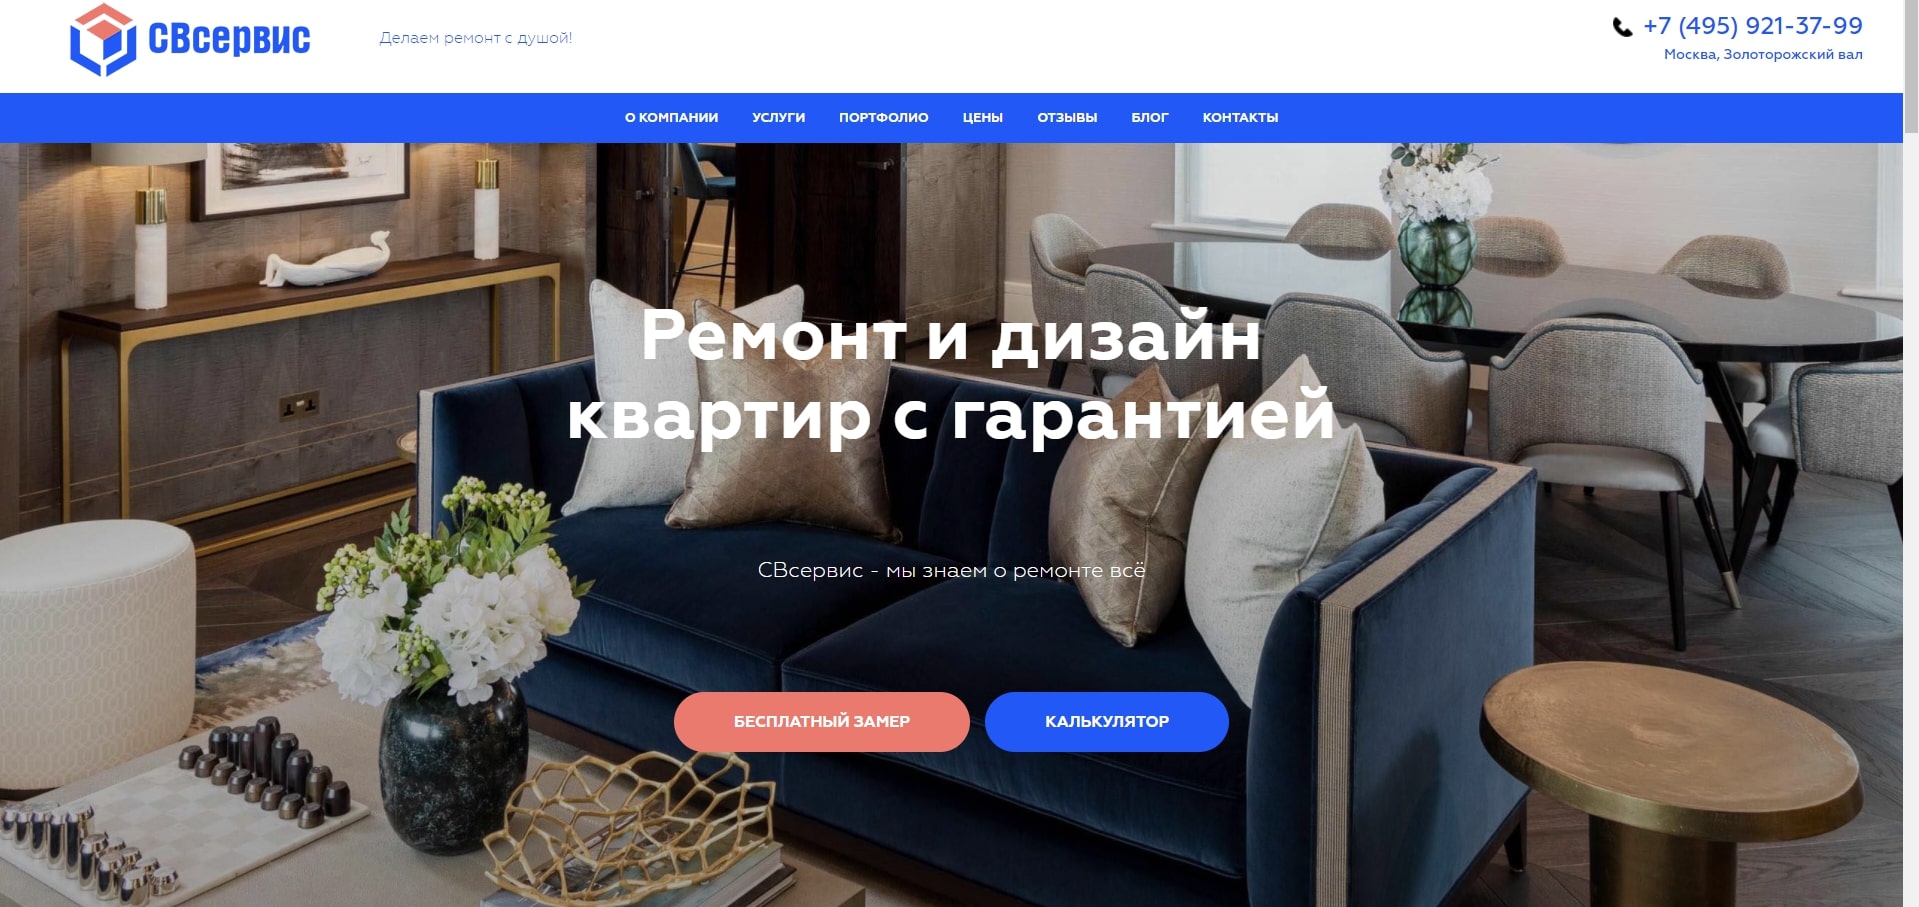 Дизайн интерьеров - отзывы о компаниях в Москве - BLIZKO